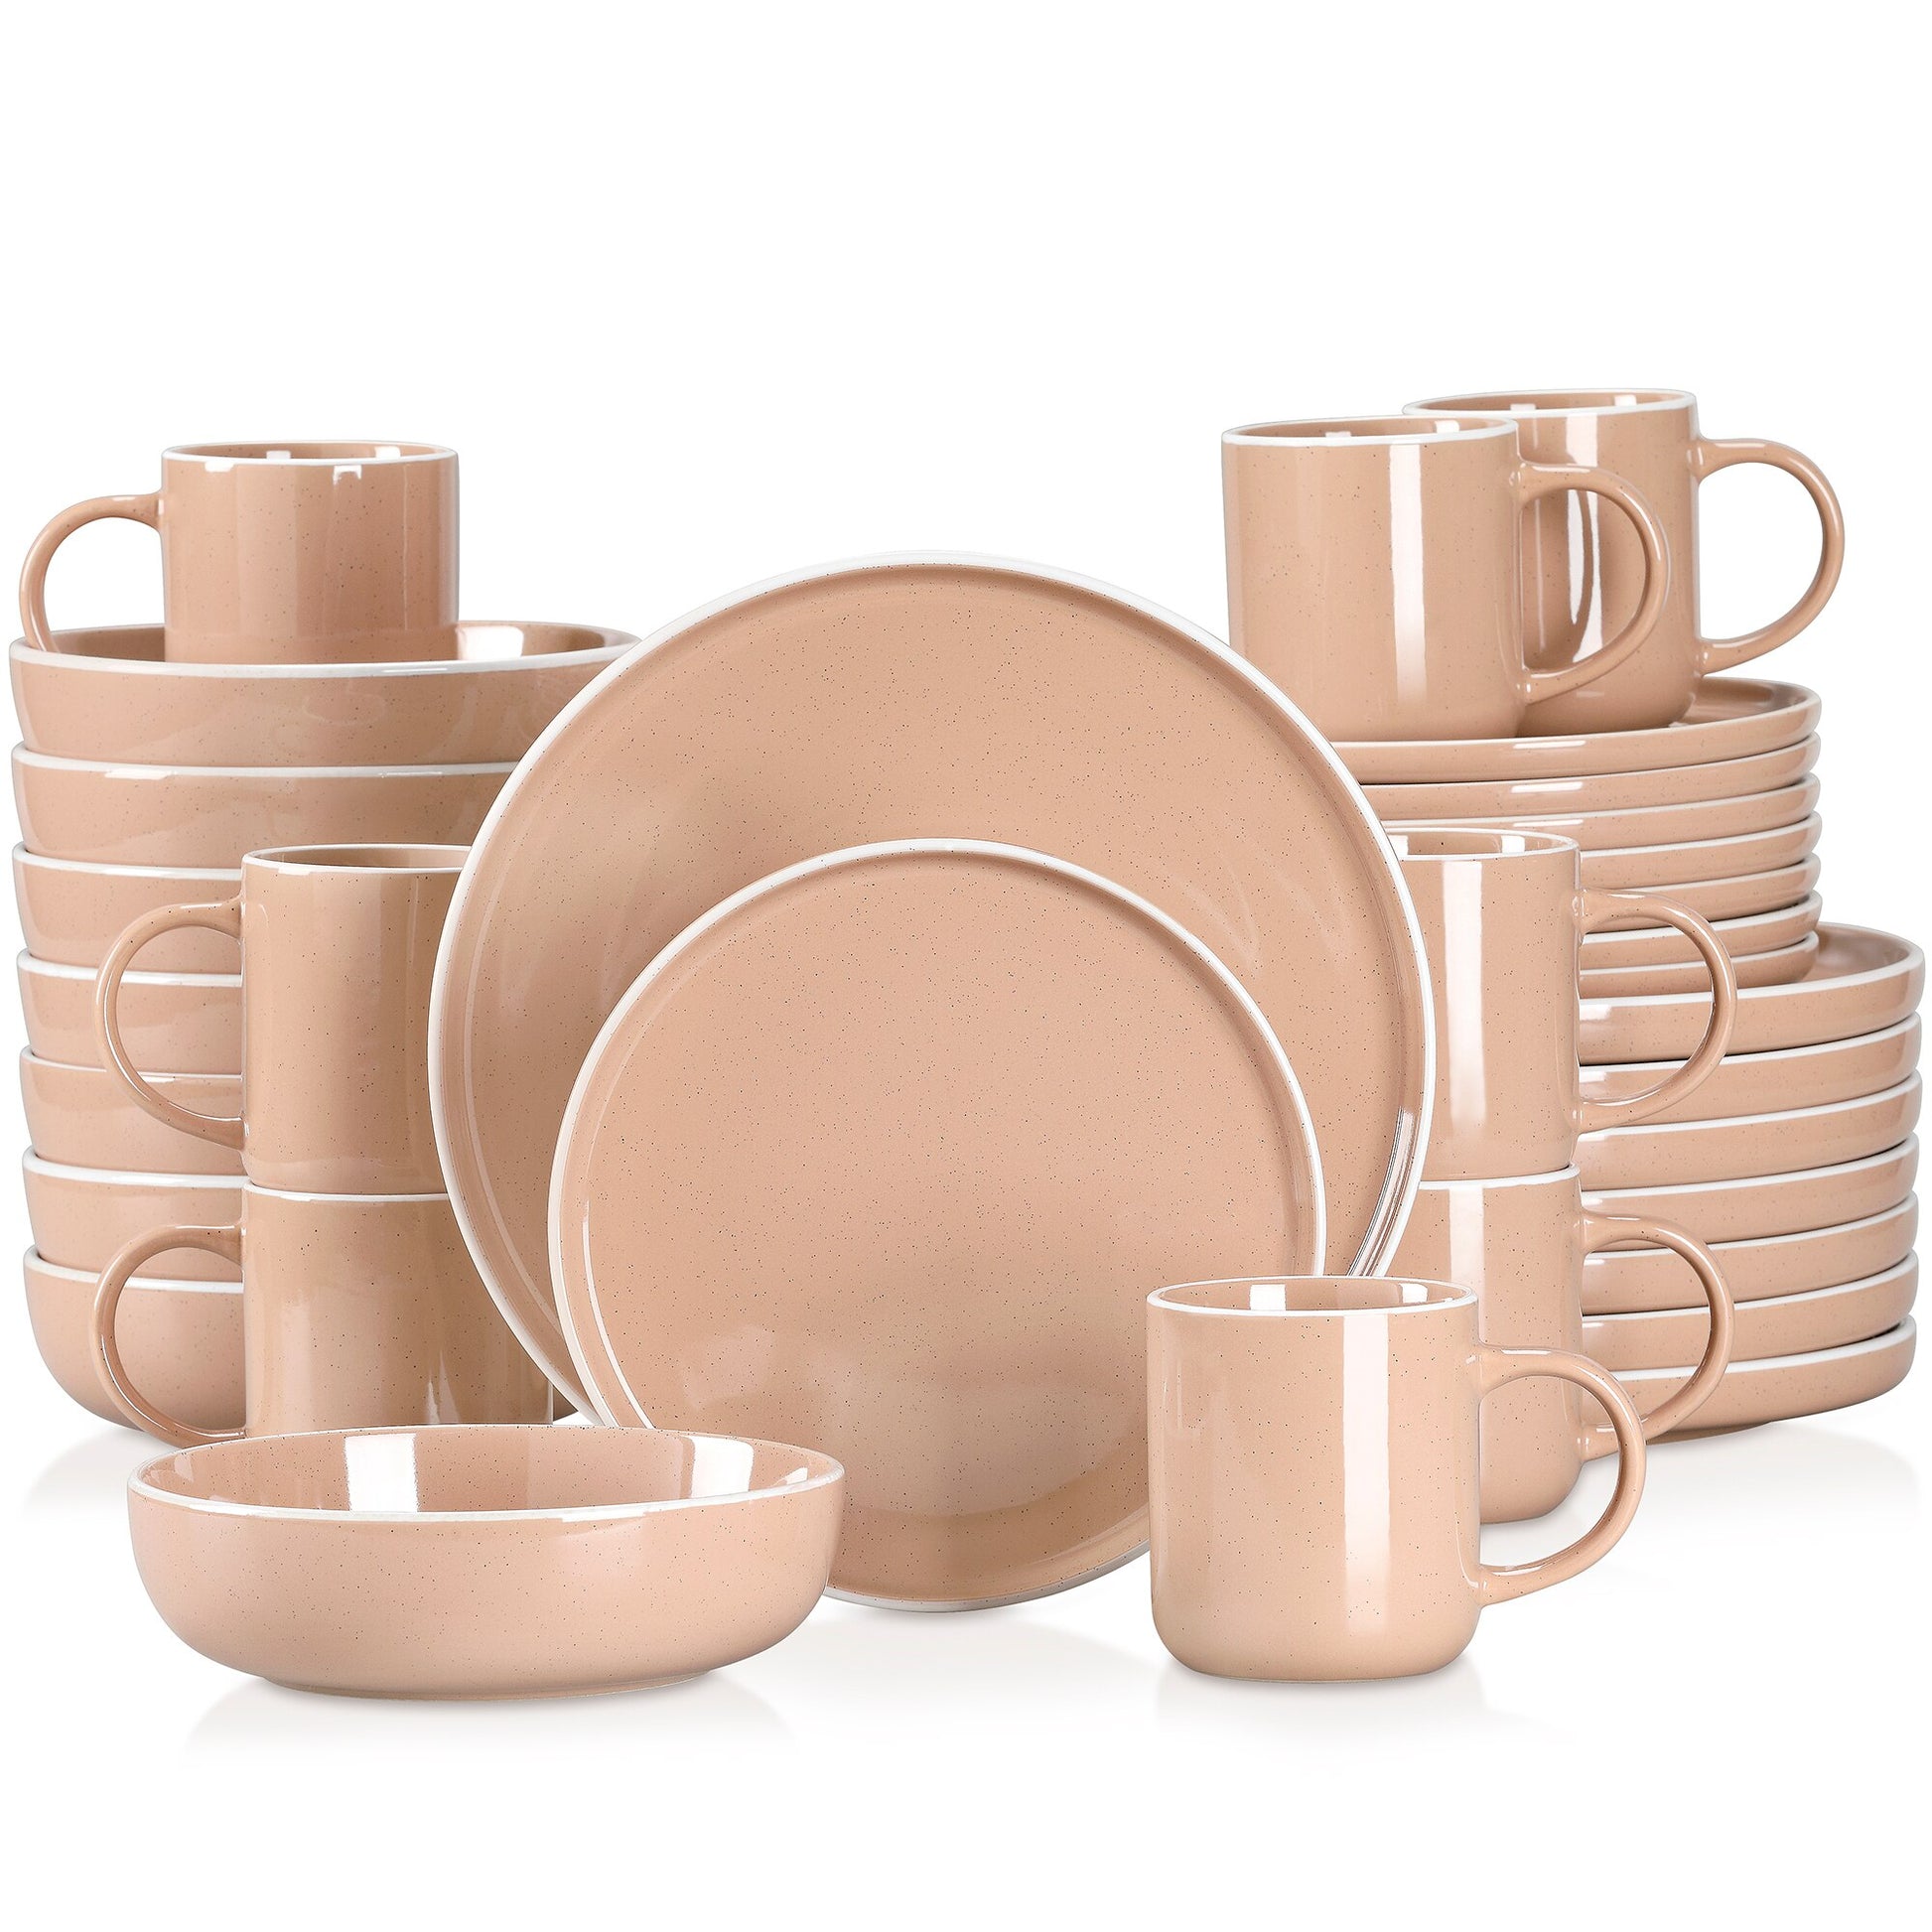 16/32/48 teiliges weißes Stoneware-Set mit Sesame Glaze Ceramic Dinnerware-Set - Unique Outlet